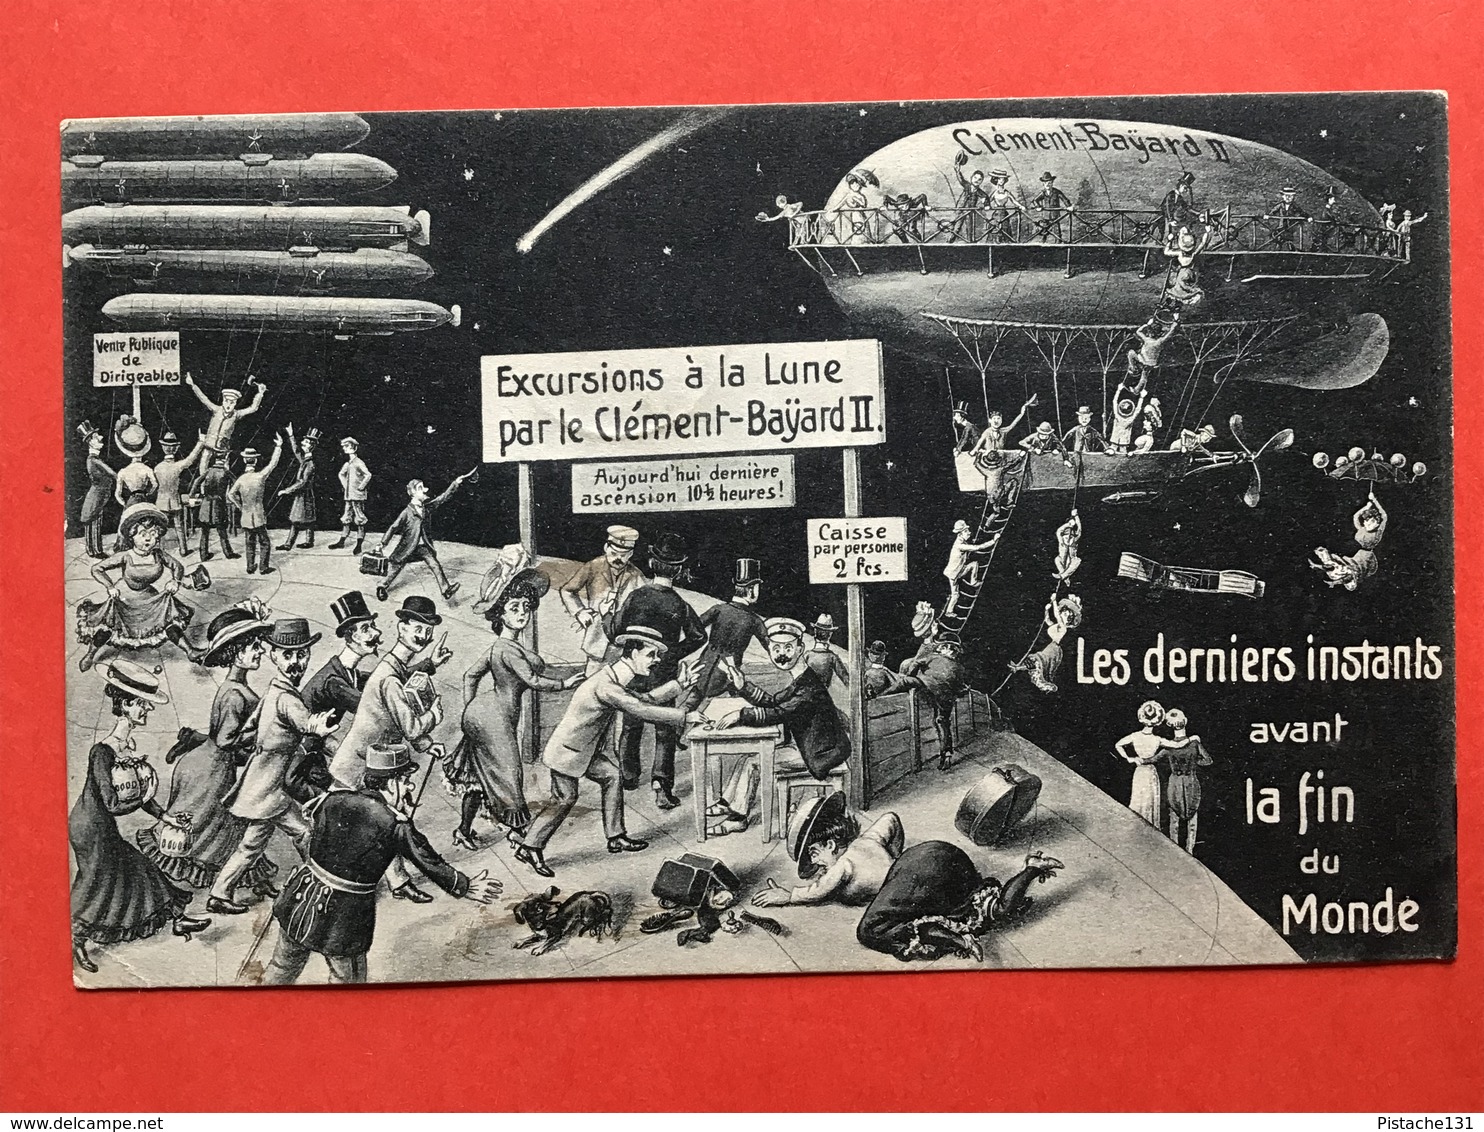 1910 - LES DERNIERS INSTANTS AVANT LA FIN DU MONDE - EXCURSIONS A LA LUNE PAR LE CLEMENT-BAYARD II - Humour